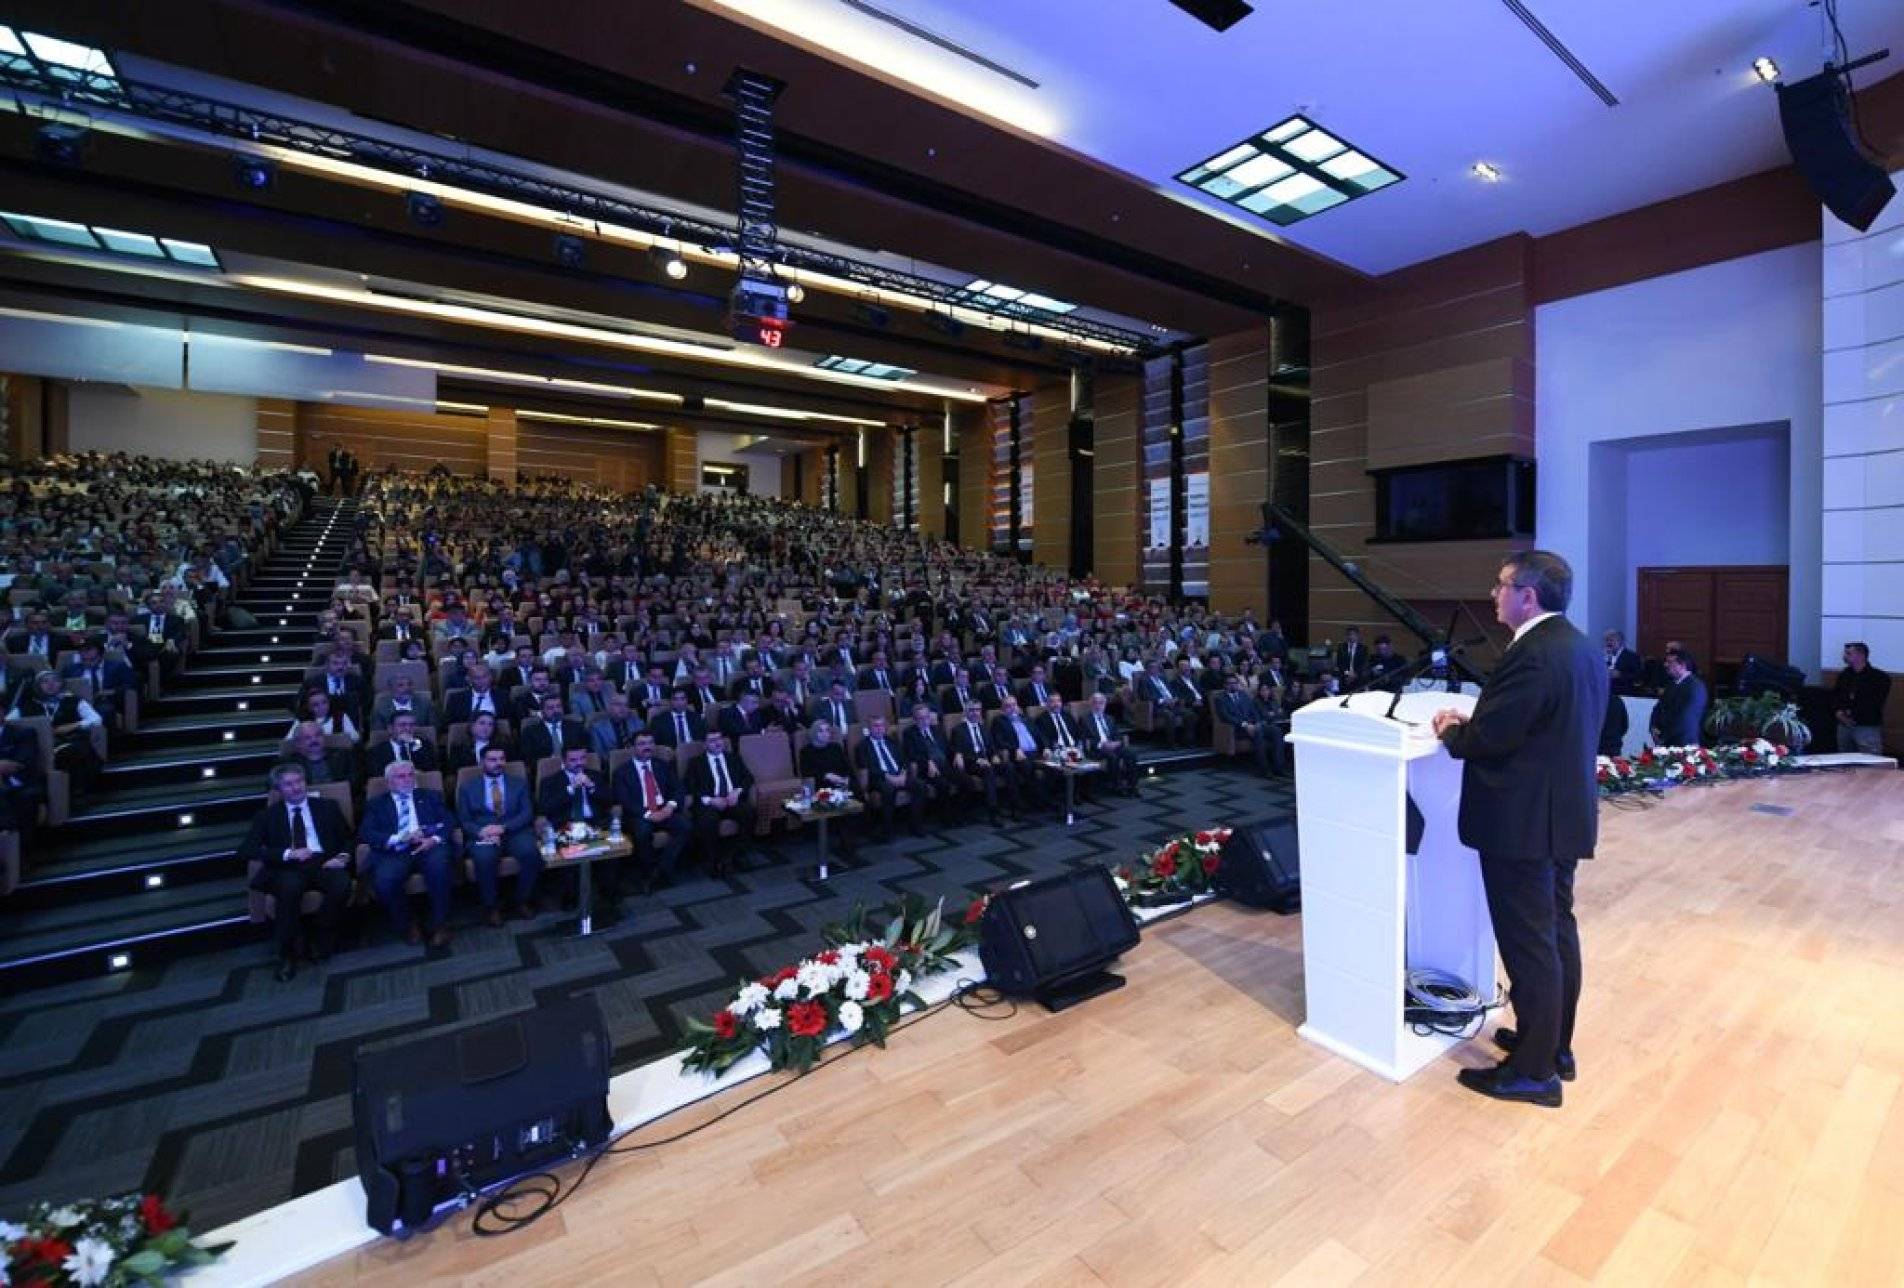 Milli Eğitim Bakanı Yusuf Tekin, imam hatip okullarının önemine ve tarihçesine dikkat çekti.